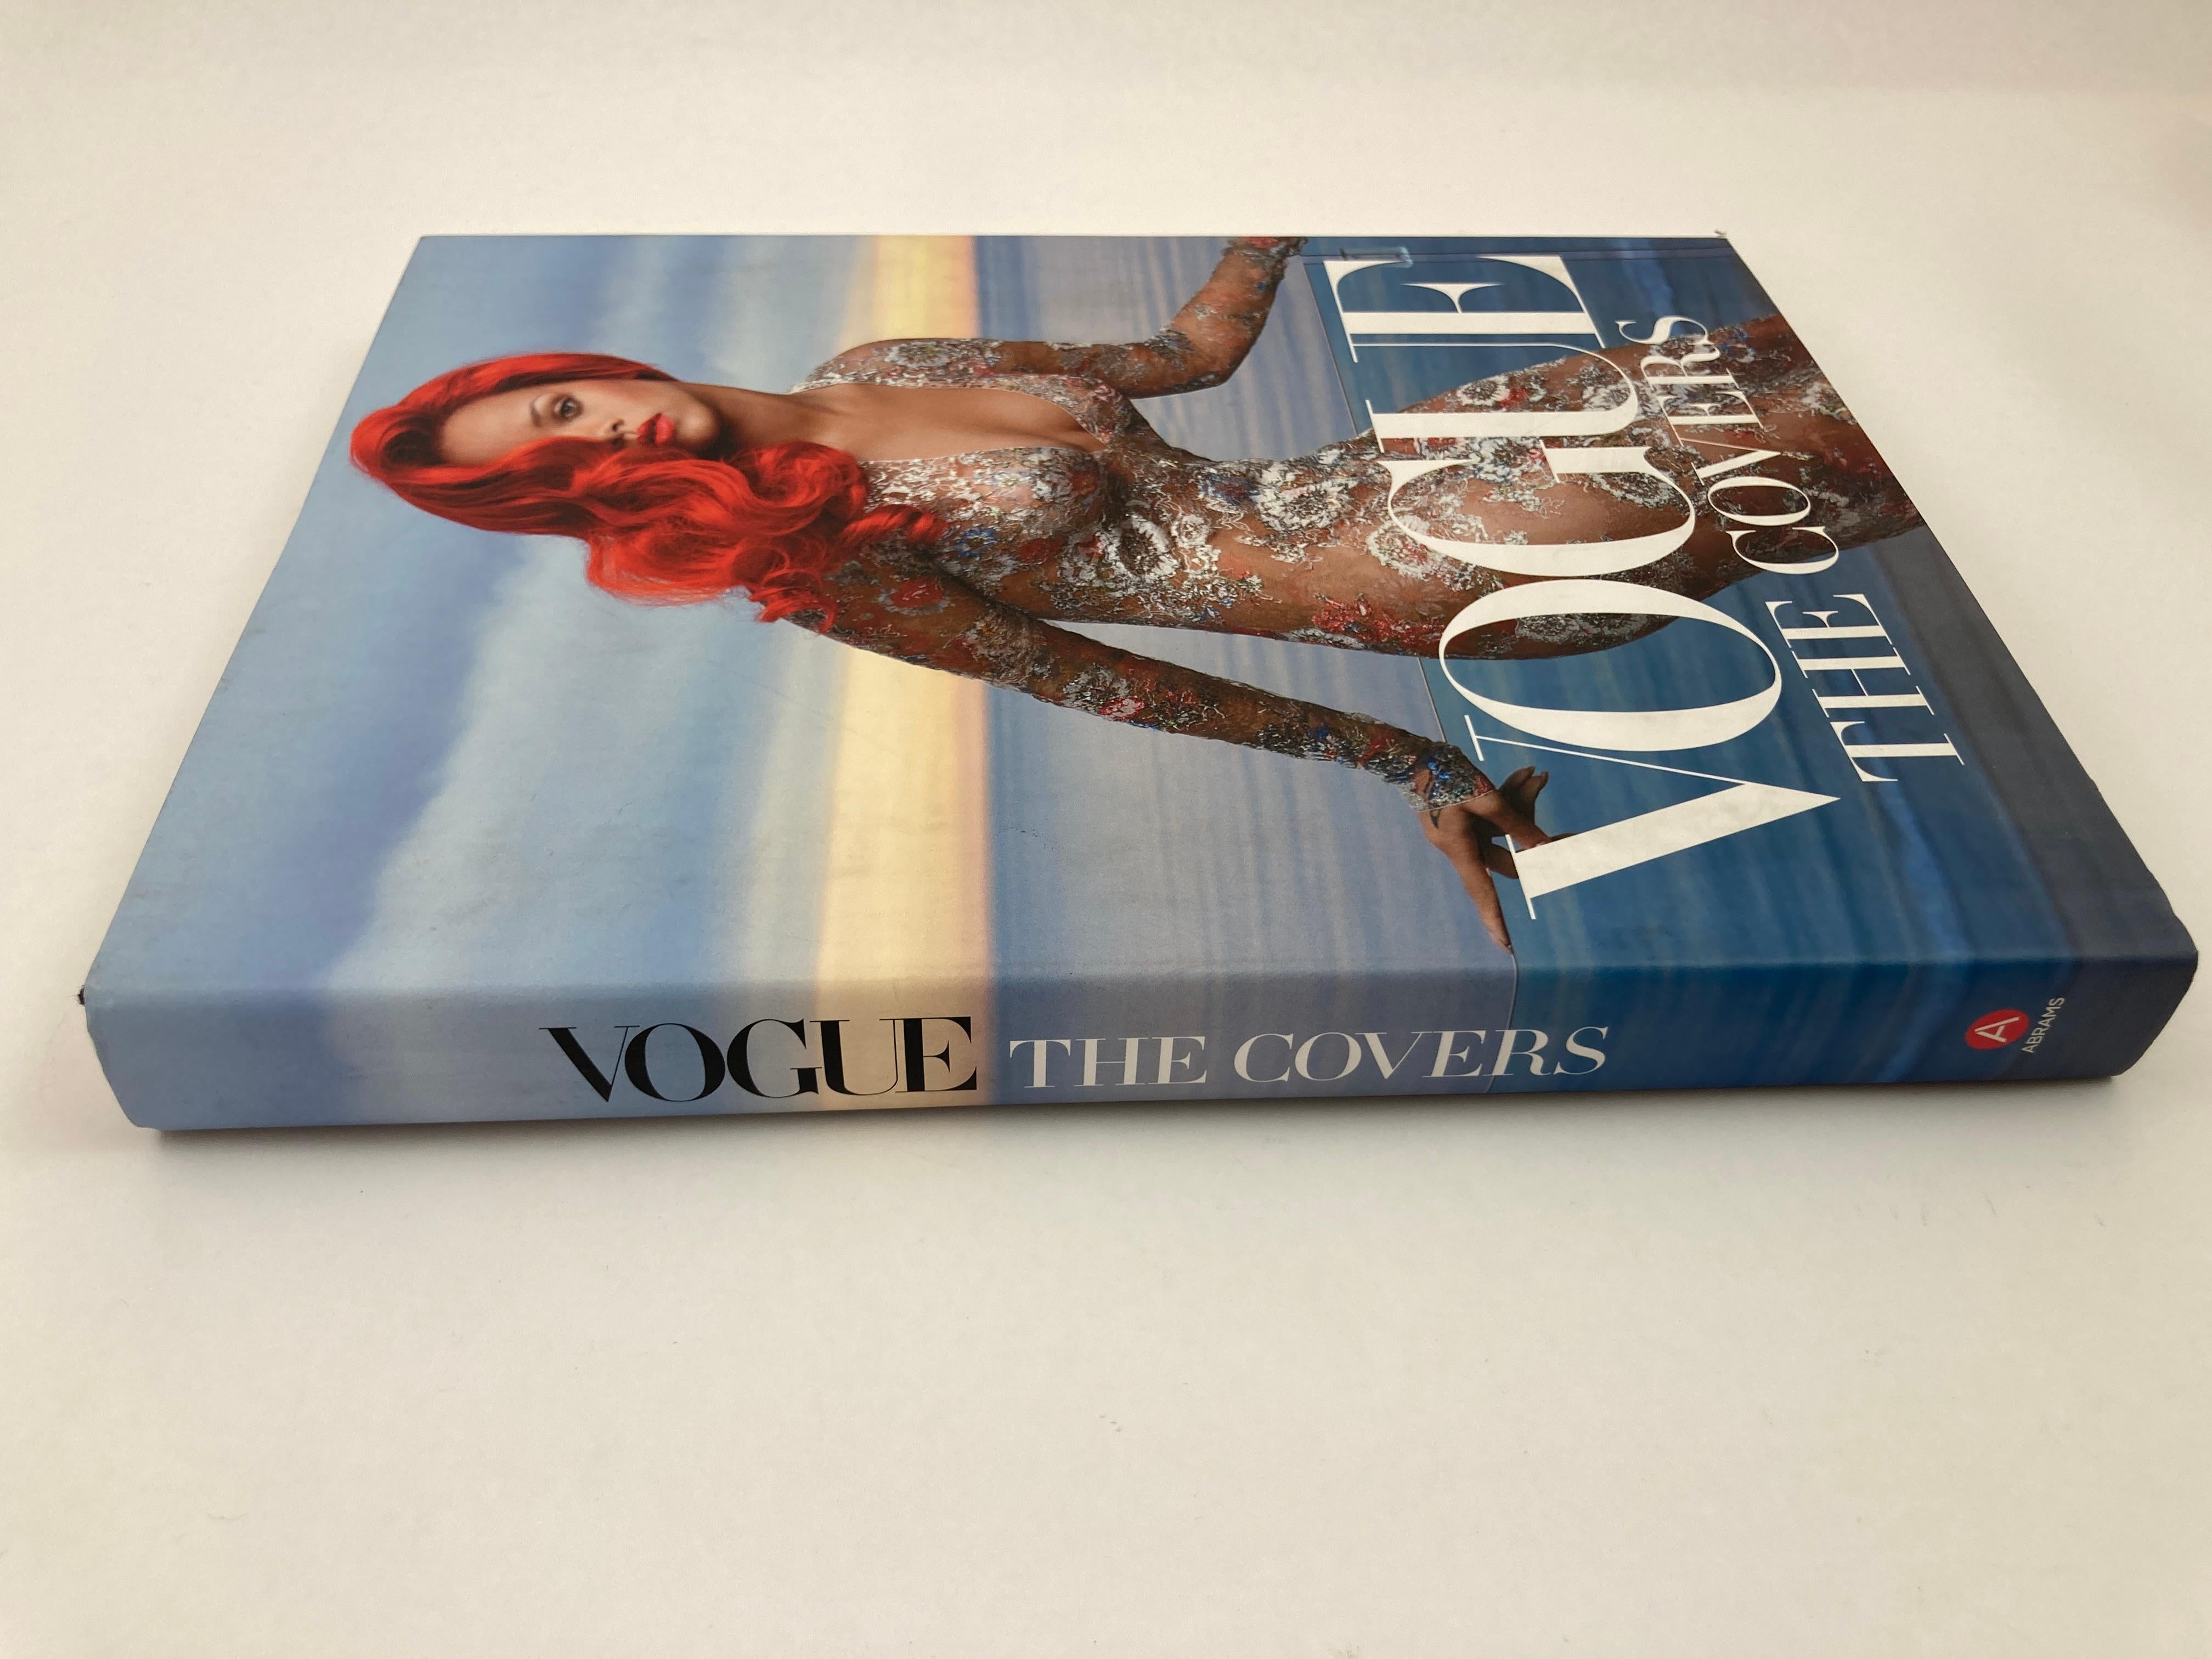 Vogue The Covers Hardcover Coffee Table Book.
Par la fondatrice et auteure de Gallery Met, Dodie Kazanjian, cette étonnante édition mise à jour de Vogue : The Covers continue de rendre hommage à sa tradition de beauté et d'excellence avec une